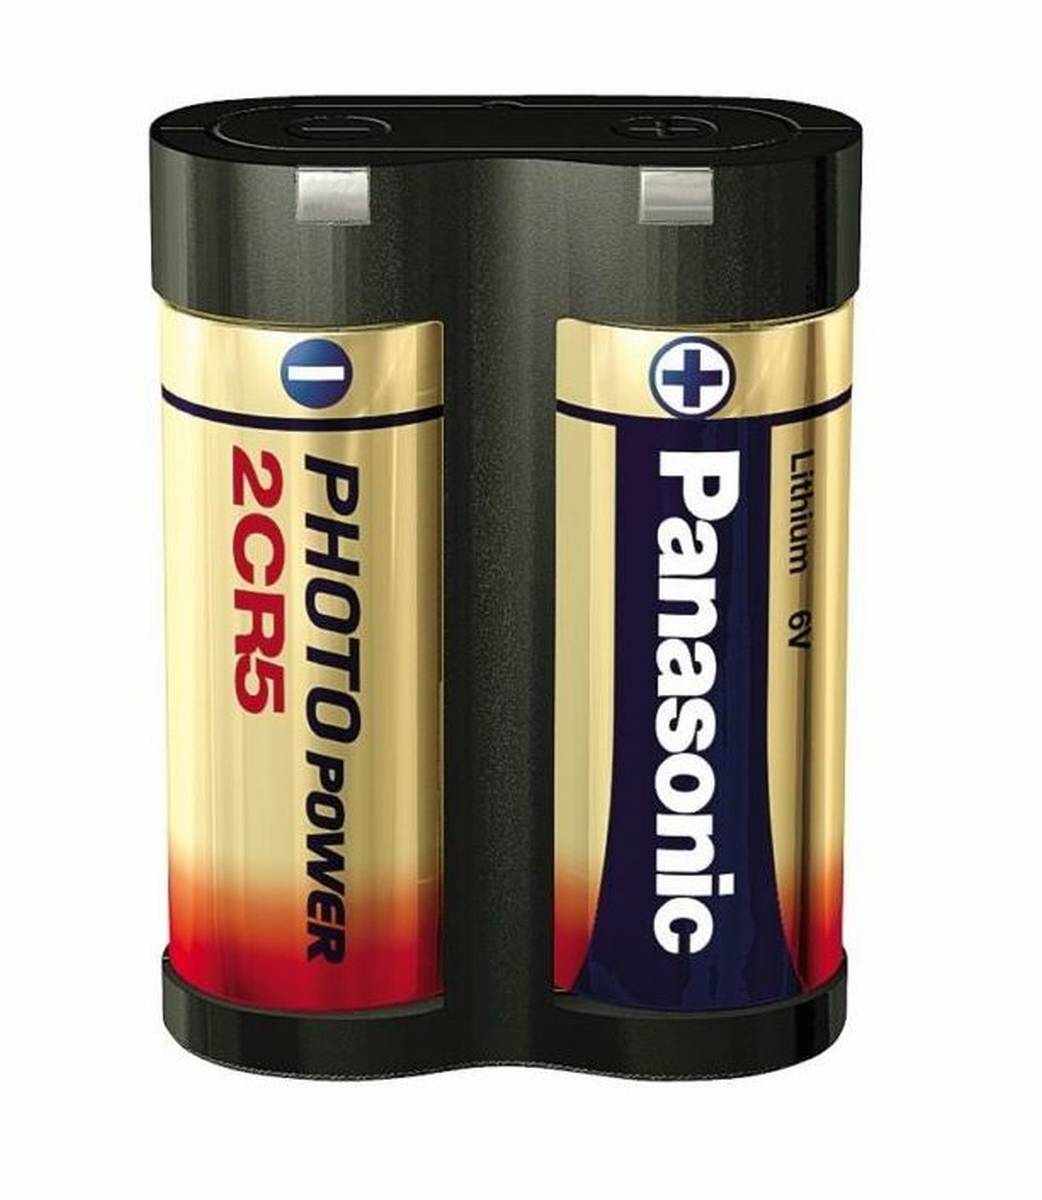 Panasonic 2CR5 6V foto batteria al litio (blister da 1) UN3090 - SV188